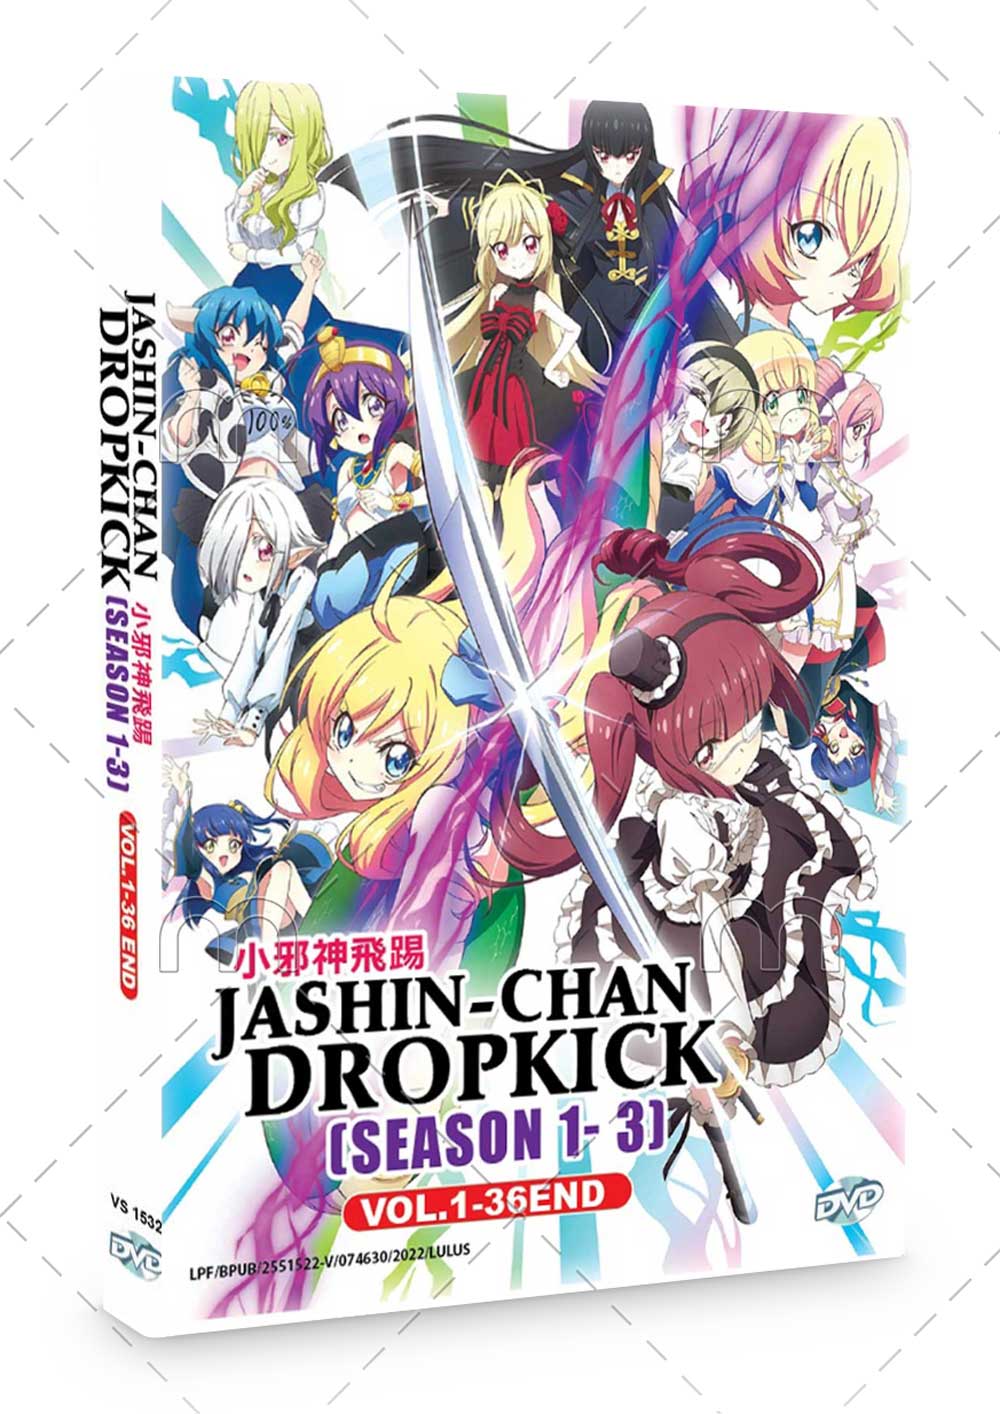 Jashin-chan Dropkick Season 1-3 (DVD) (2018-2022) Anime